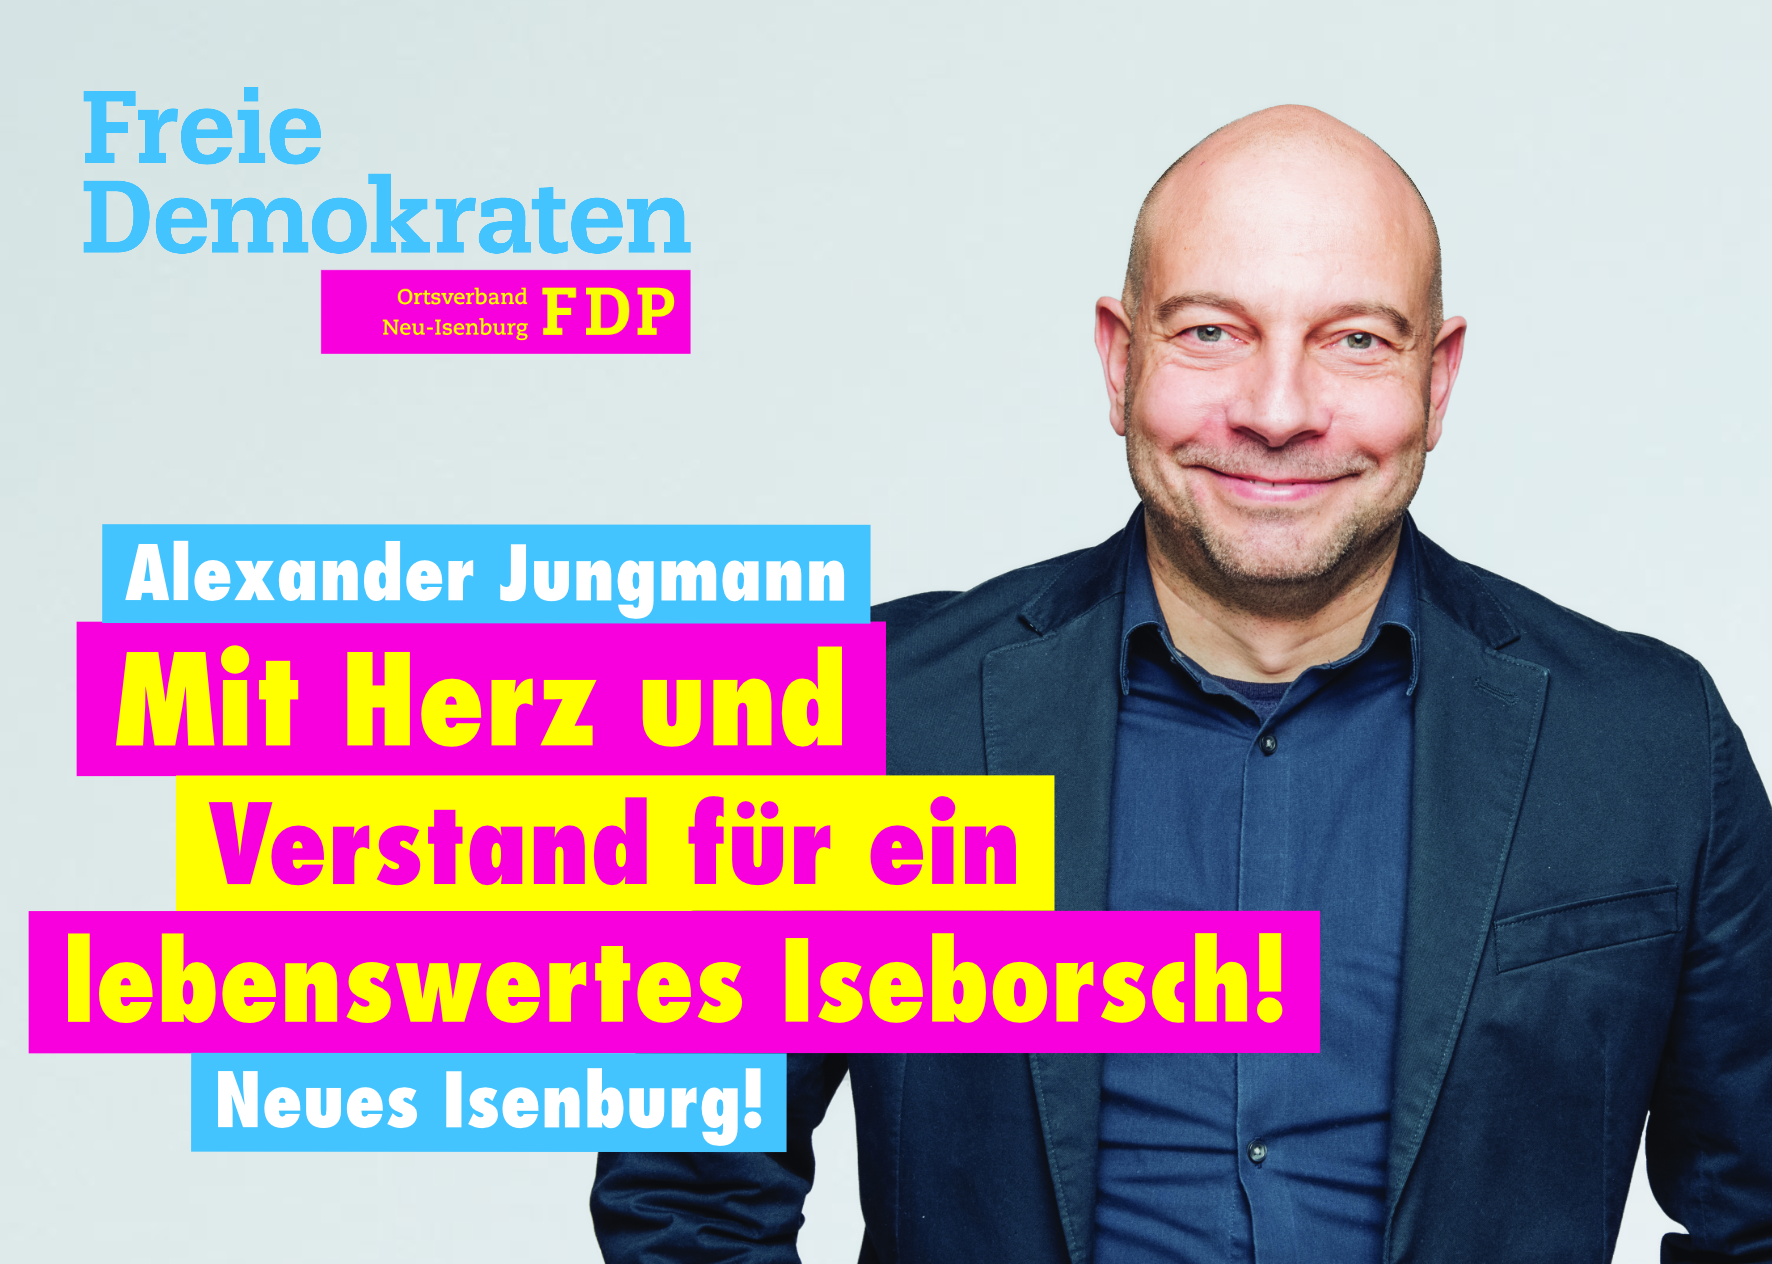 Alexander Jungmann, Listenplatz 4. zur Kommunalwahl am 14. März 2021 in Neu-Isenburg und Listenplatz 1 zur Ortsbeiratswahl in Gravenbruch.